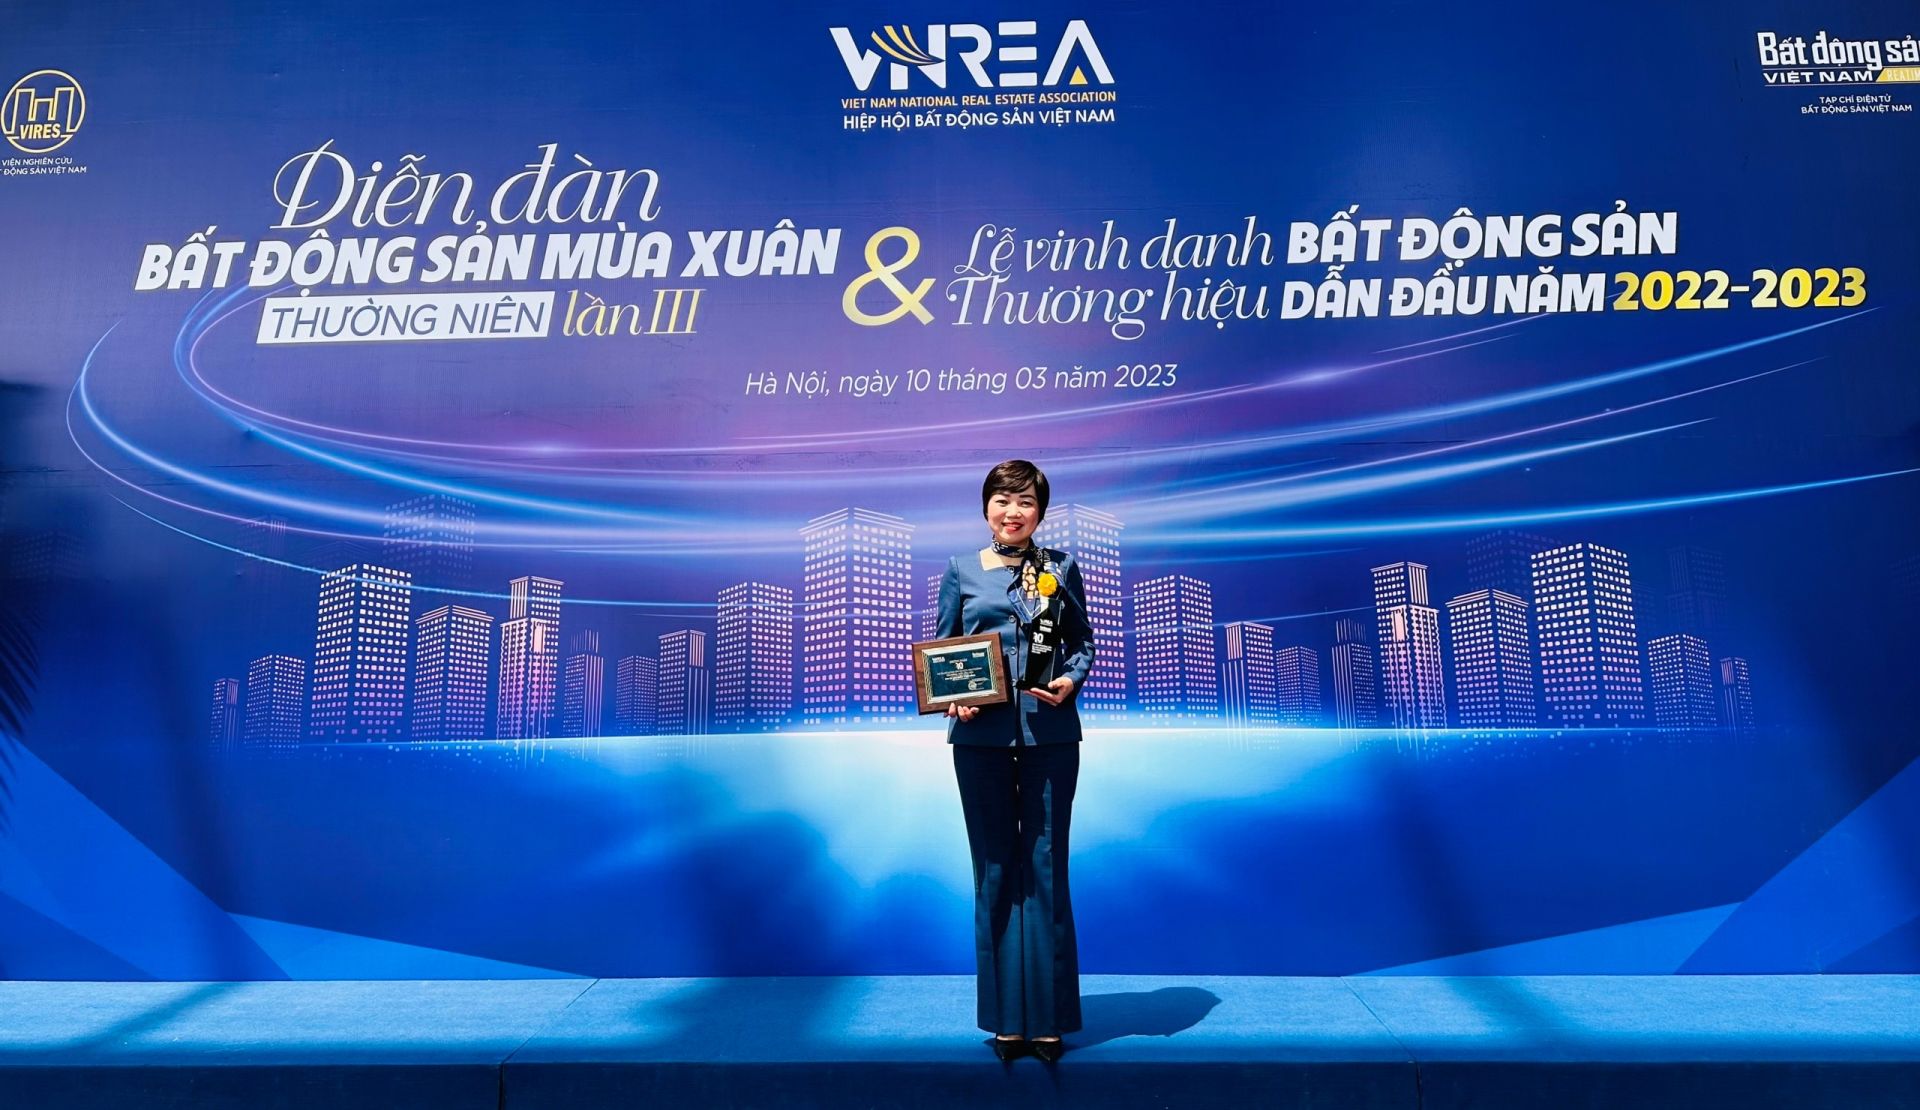 Bà Nguyễn Thị Thu Trang – Phó TGĐ Glexhomes – Đơn vị Quản lý Kinh doanh & Marketing dự án nhận giải thưởng